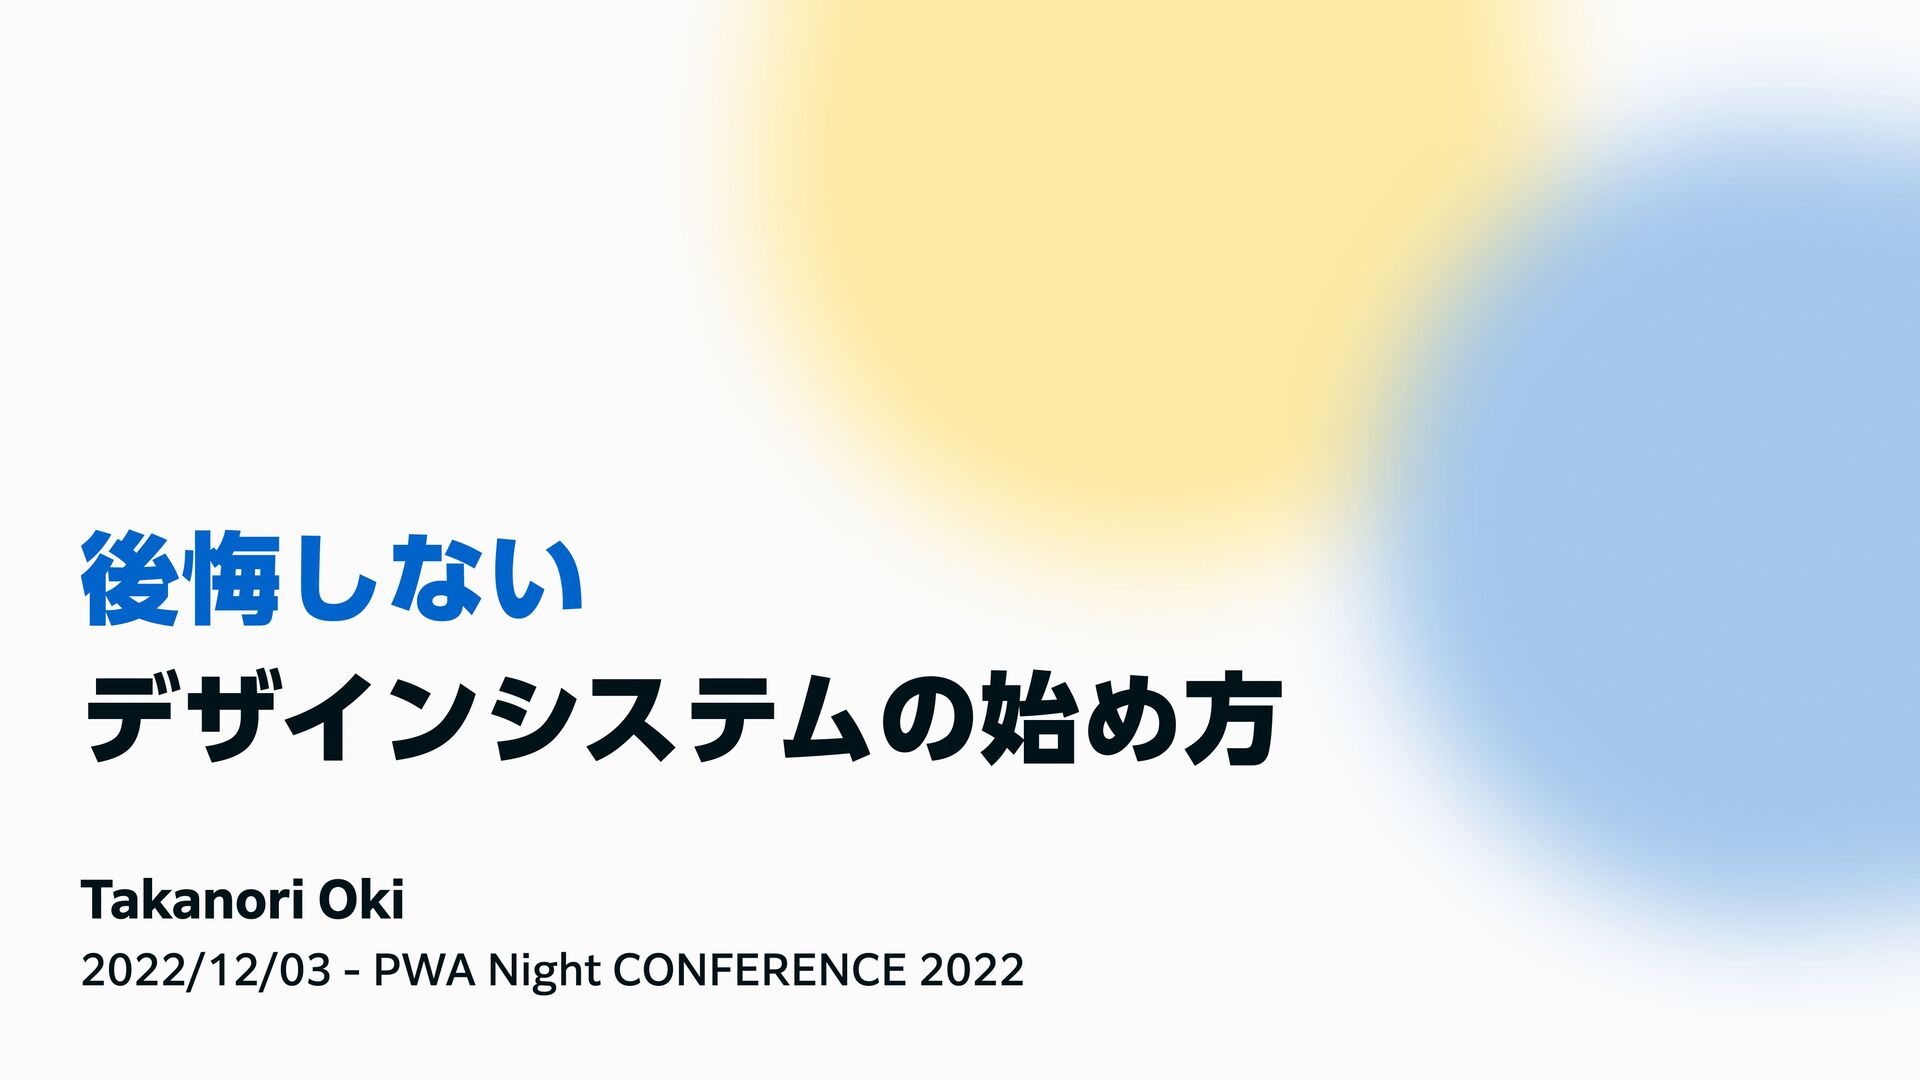 PWA Night CONFERENCE 2022